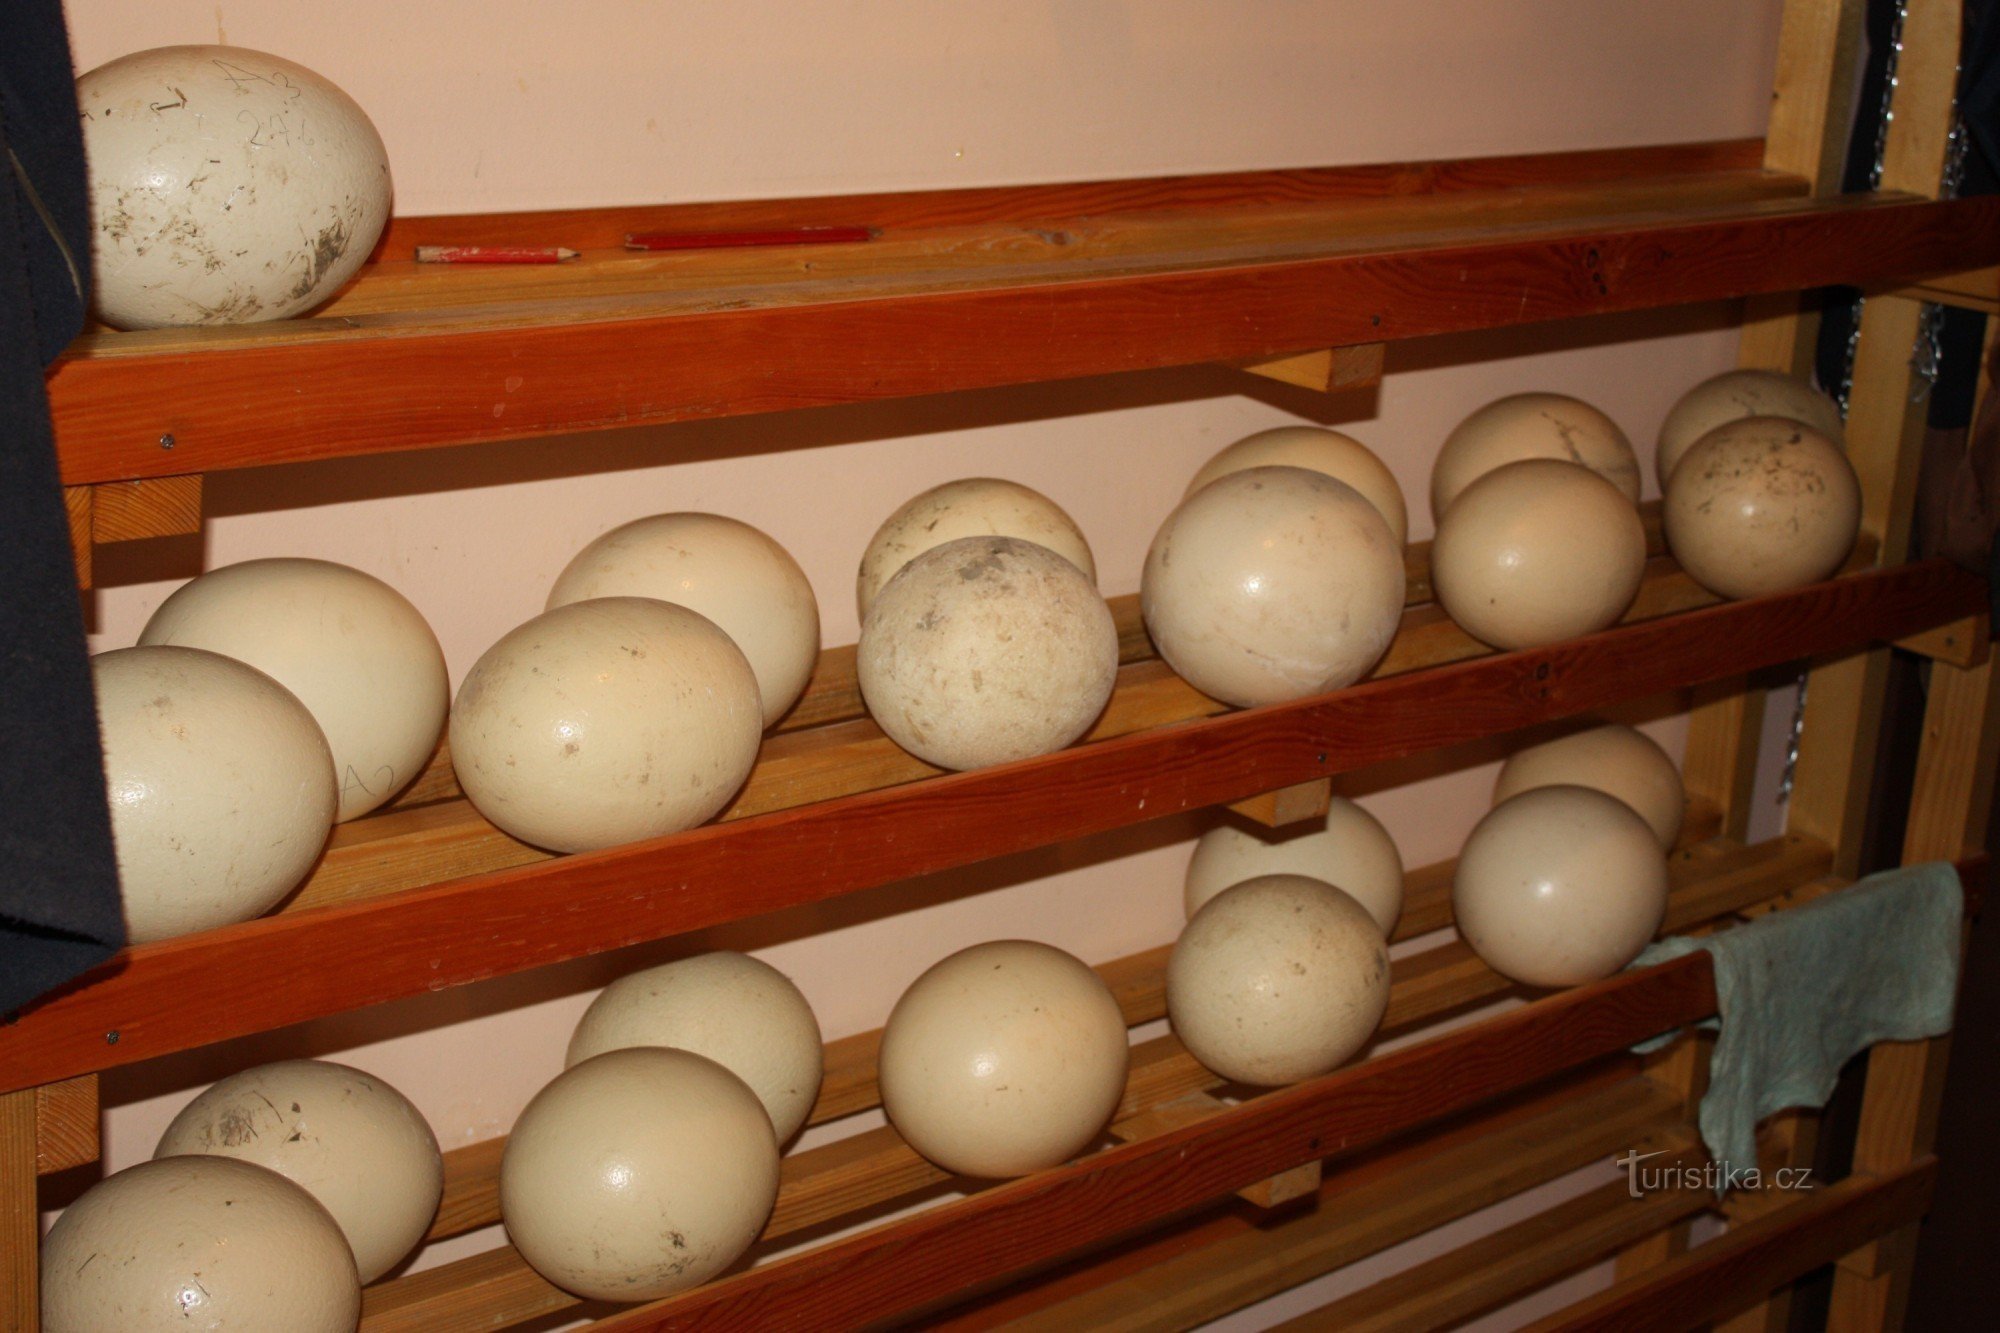 Ovos antes de serem colocados no incubatório